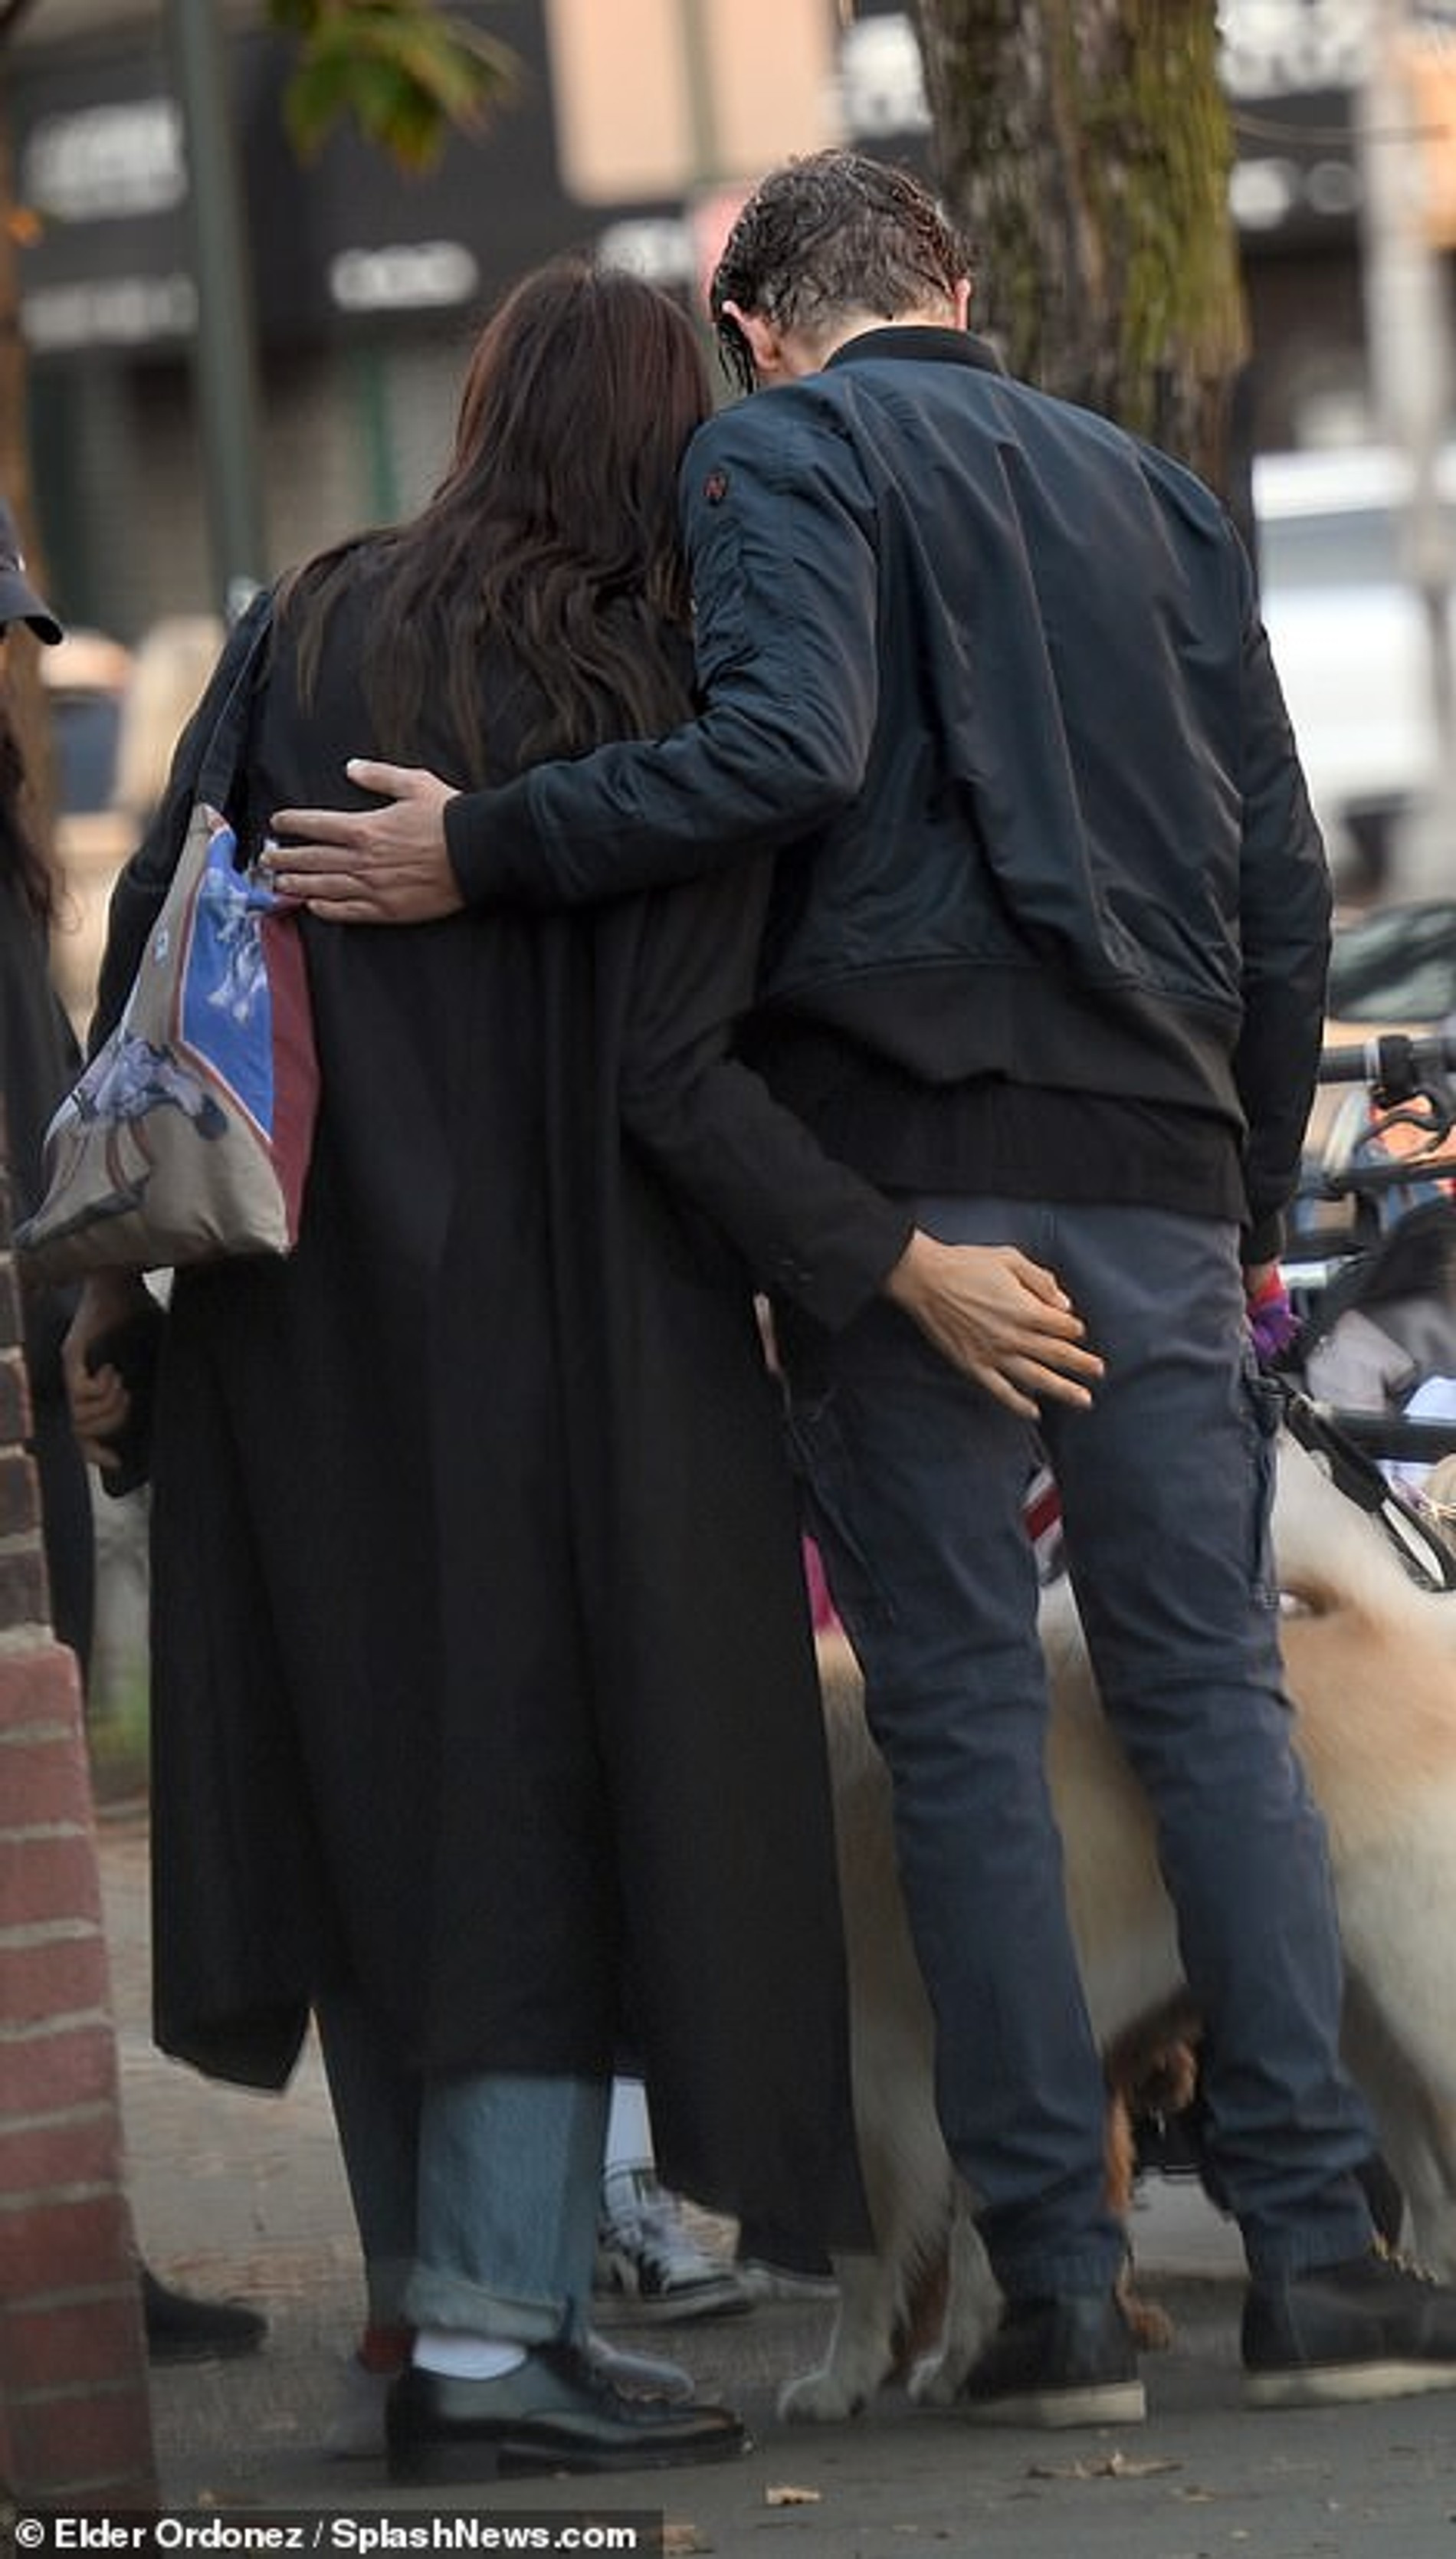 Ирина Шейк и Брэдли Купер на романтической прогулке вдвоем в Нью-Йорке 
Фото: Daily Mail